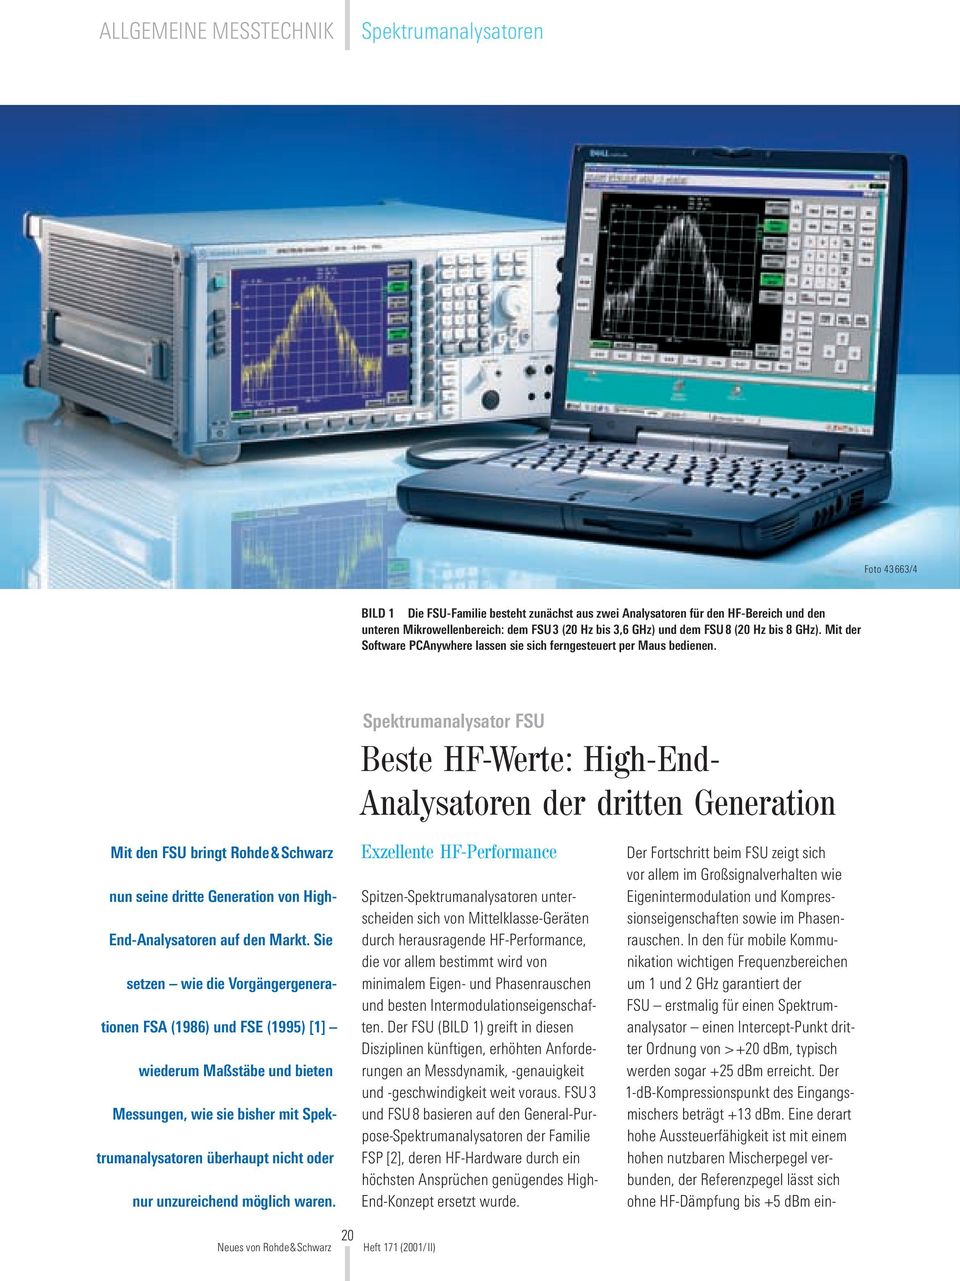 Spektrumanalysator FSU Beste HF-Werte: High-End- Analysatoren der dritten Generation Mit den FSU bringt Rohde&Schwarz nun seine dritte Generation von High- End-Analysatoren auf den Markt.